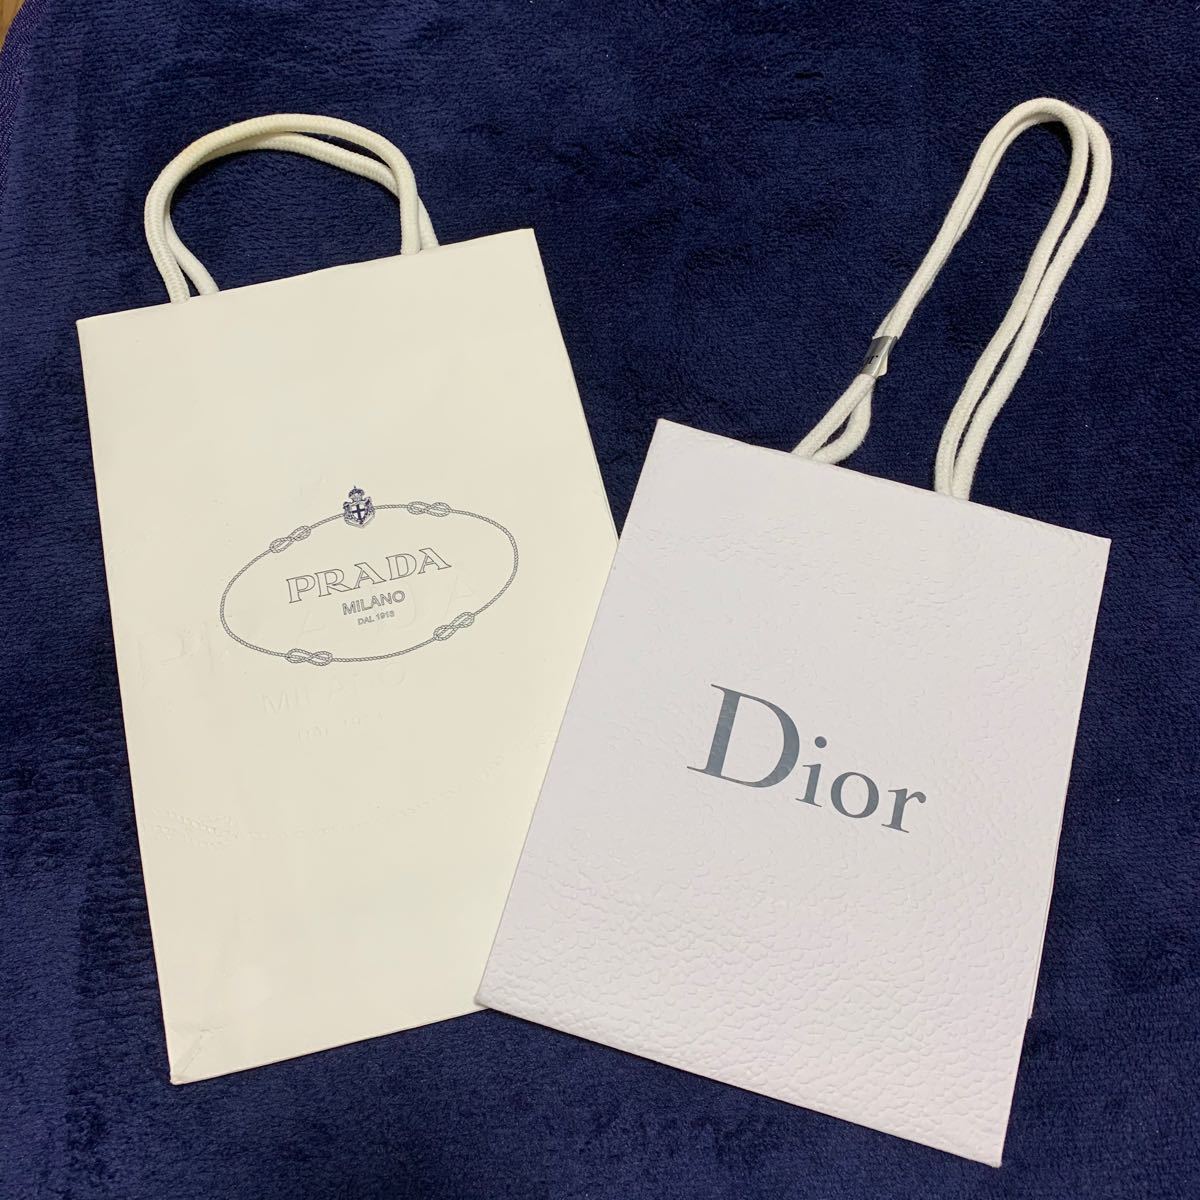 【2/14までの出品】 Dior PRADA ショップ袋 ショッパー 紙袋